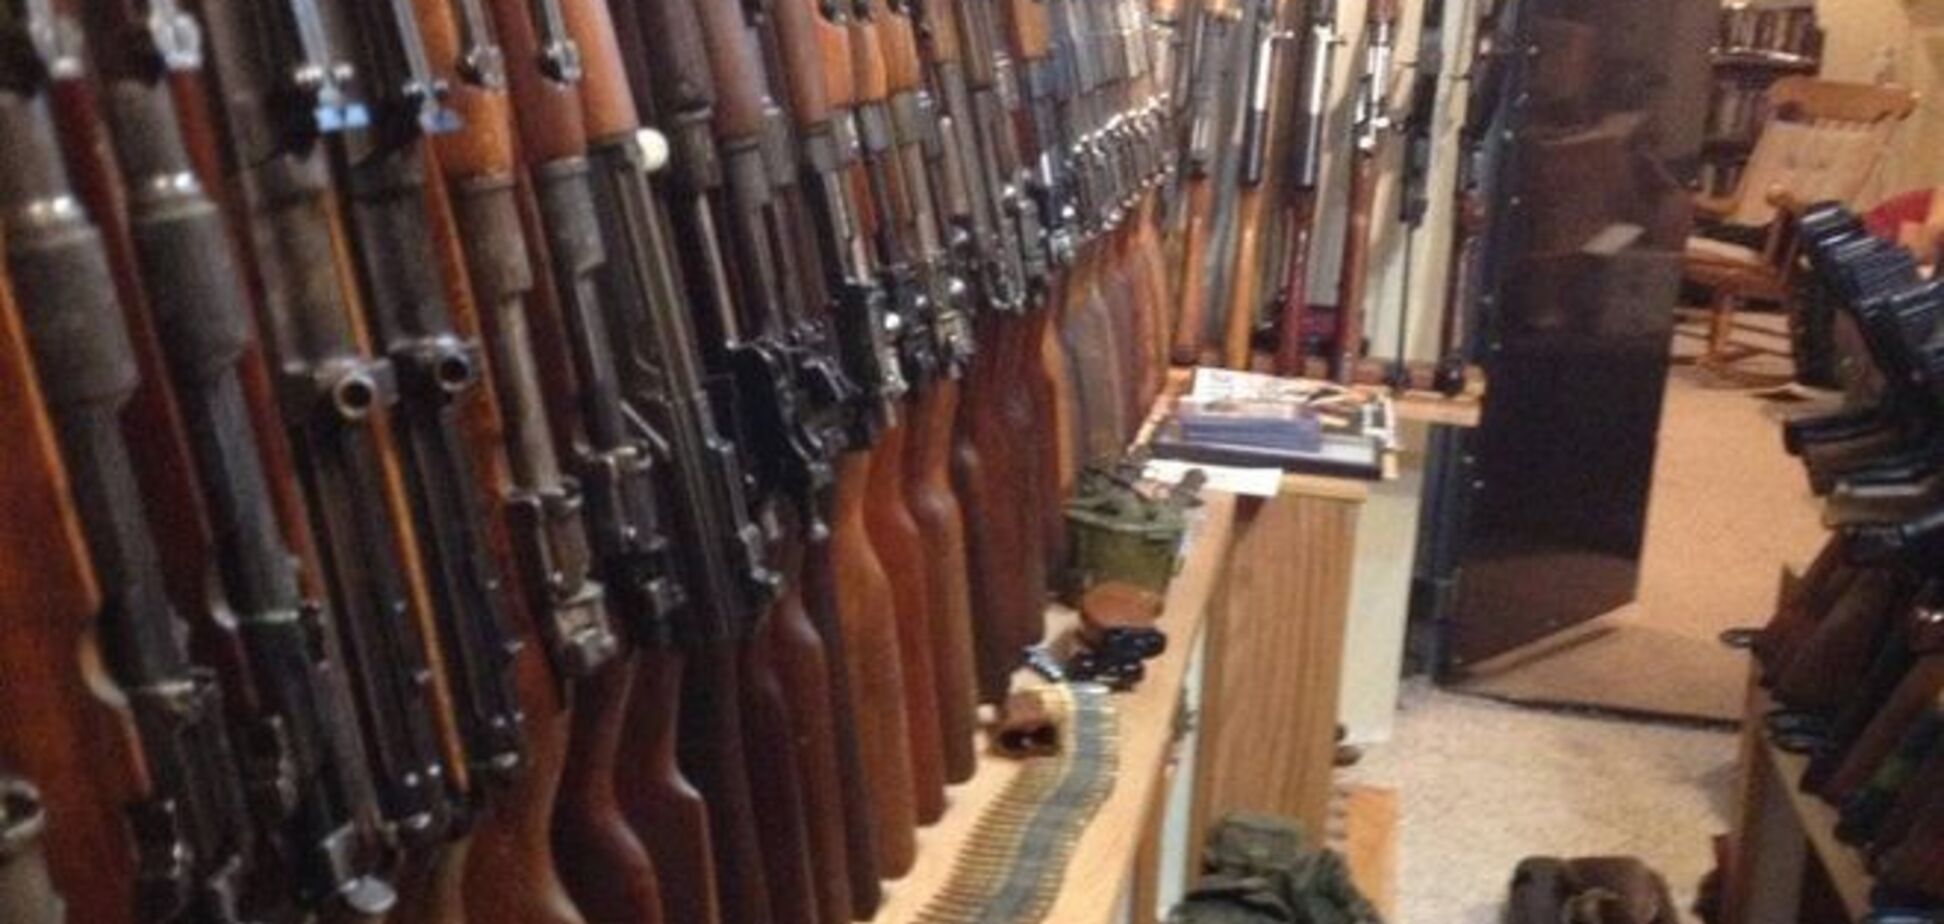 Співробітники пенітенціарної служби Донецька підірвали весь арсенал зброї